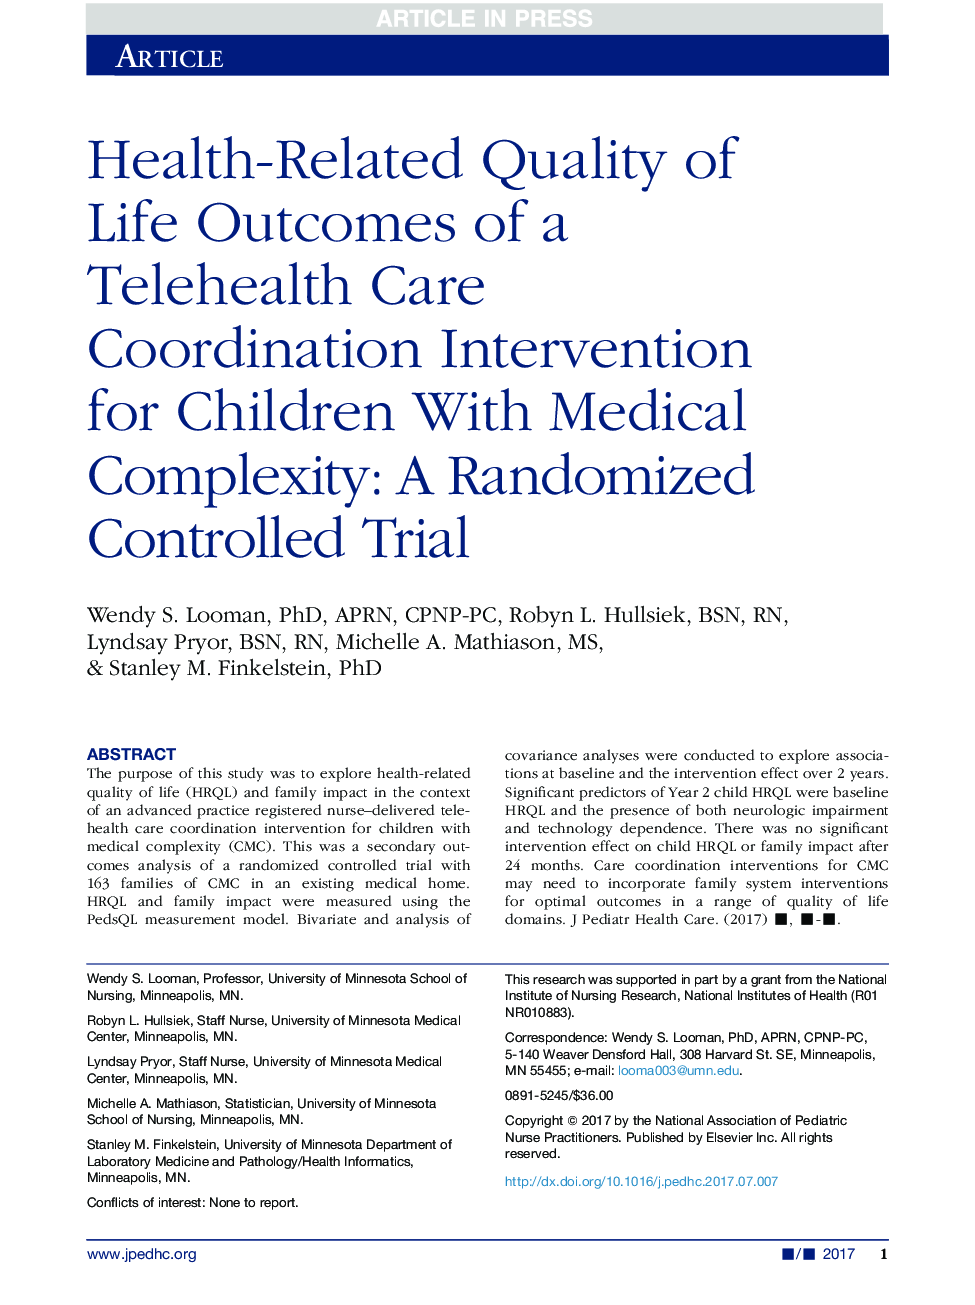 نتایج بهداشتی مرتبط با کیفیت زندگی یک مداخله هماهنگی مراقبت از سلامت برای کودکان با پیچیدگی پزشکی: یک آزمایش تصادفی کنترل شده 